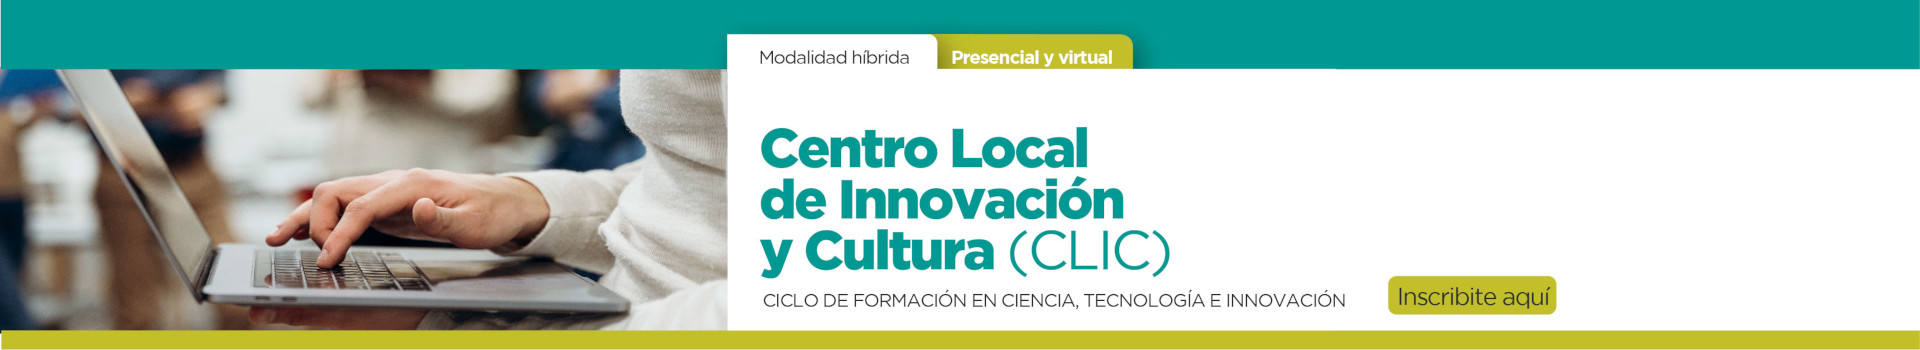 Centro Local de Innovacion y Cultura